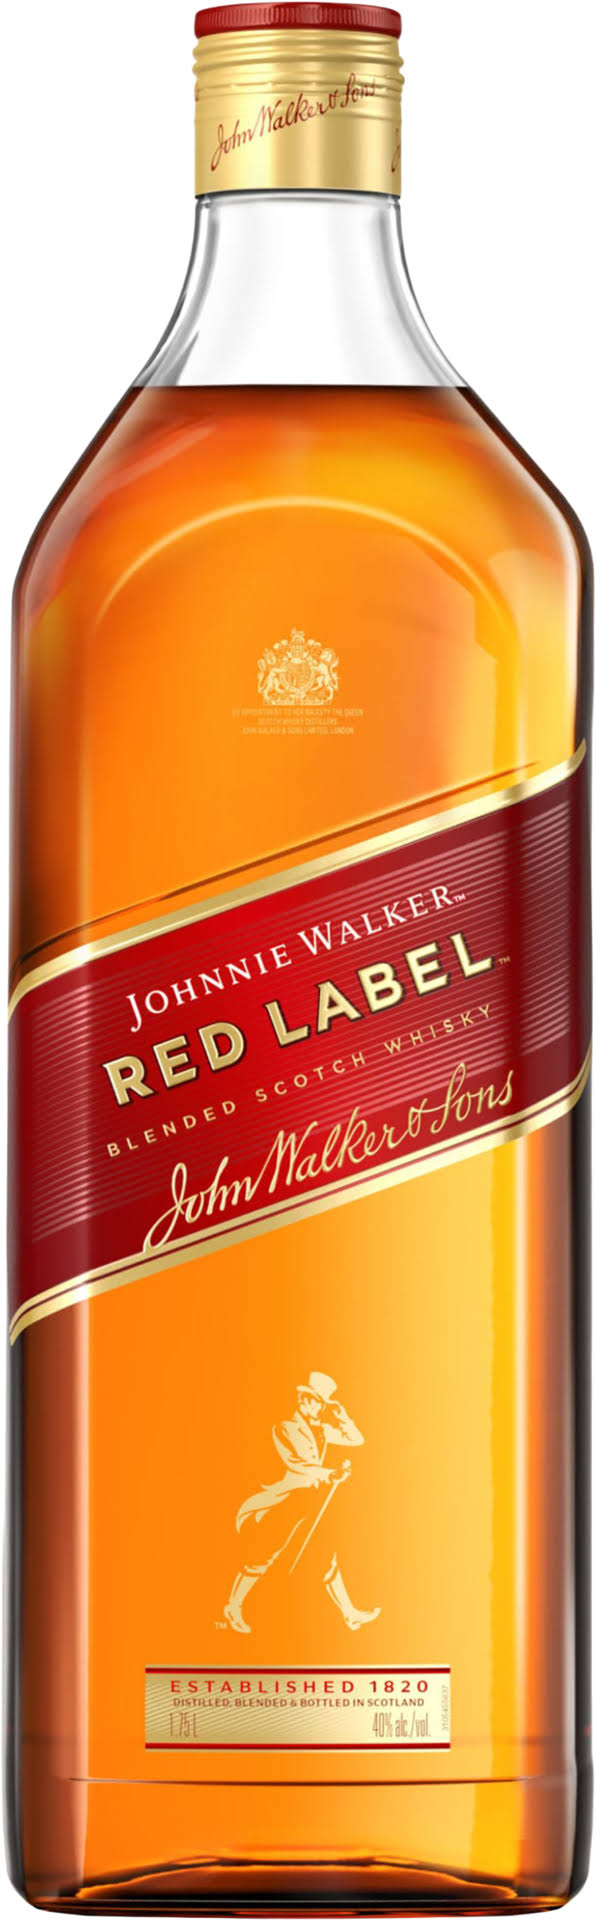 Johnnie Walker Red Label Blended Scotch Whisky - 1.75L